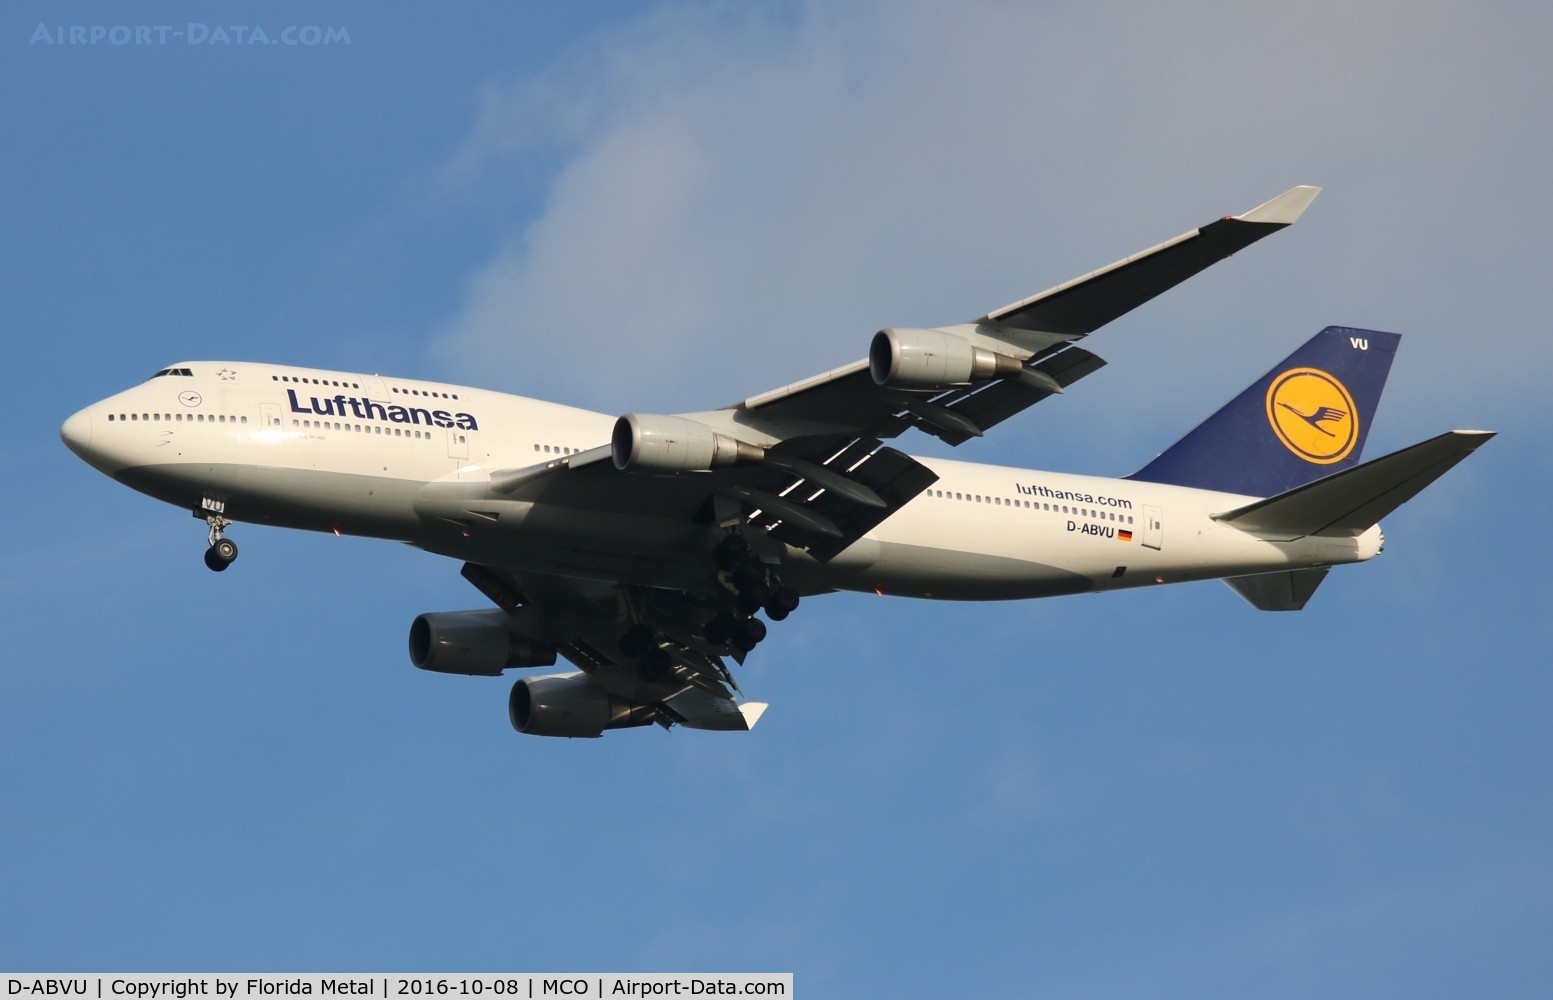 D-ABVU, 1998 Boeing 747-430 C/N 29492, Lufthansa